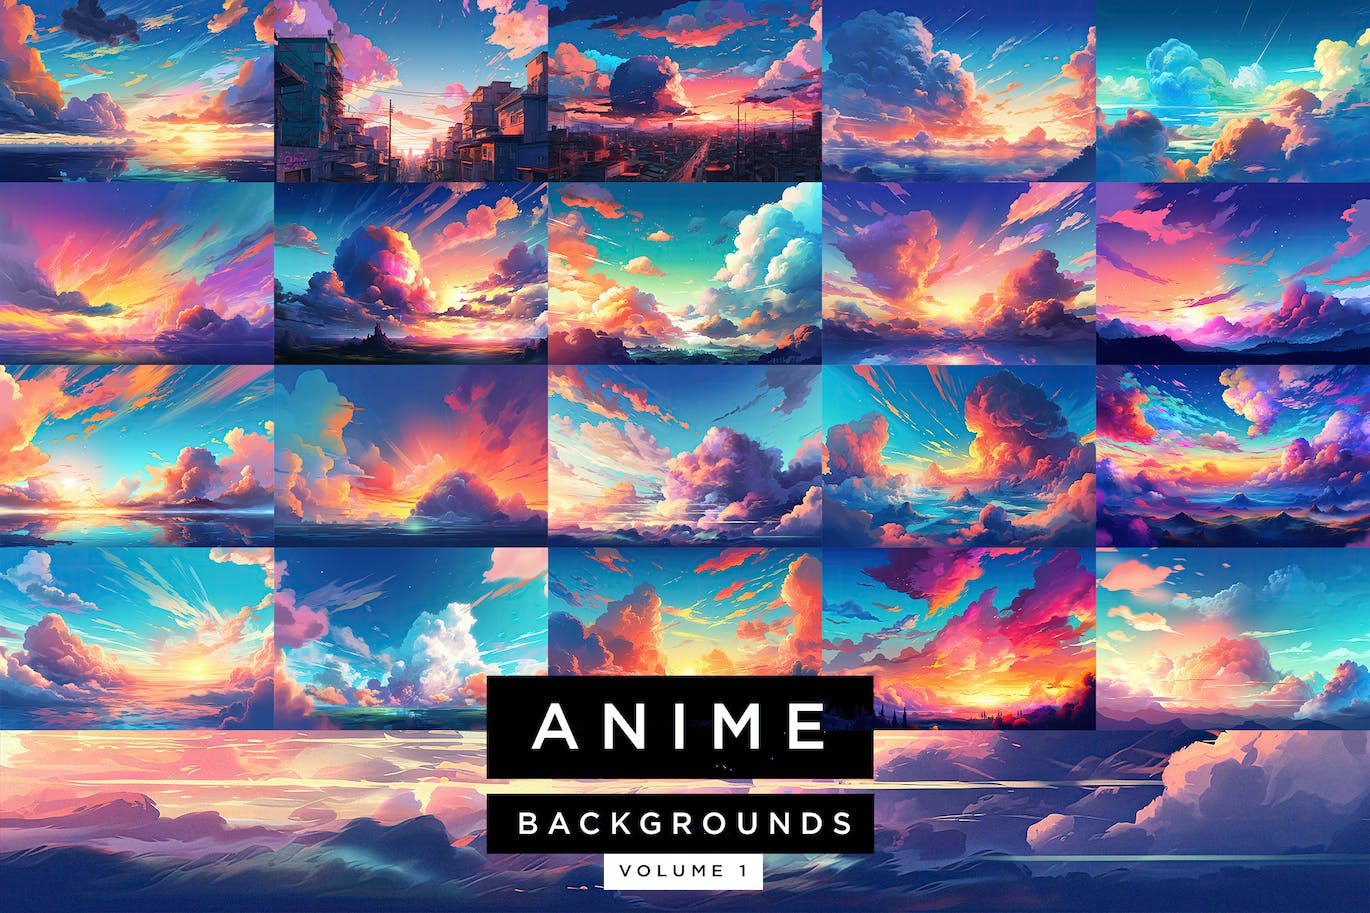 21+动漫风格云彩天空背景底纹纹理大集合anime-backgrounds-pack-volume-1